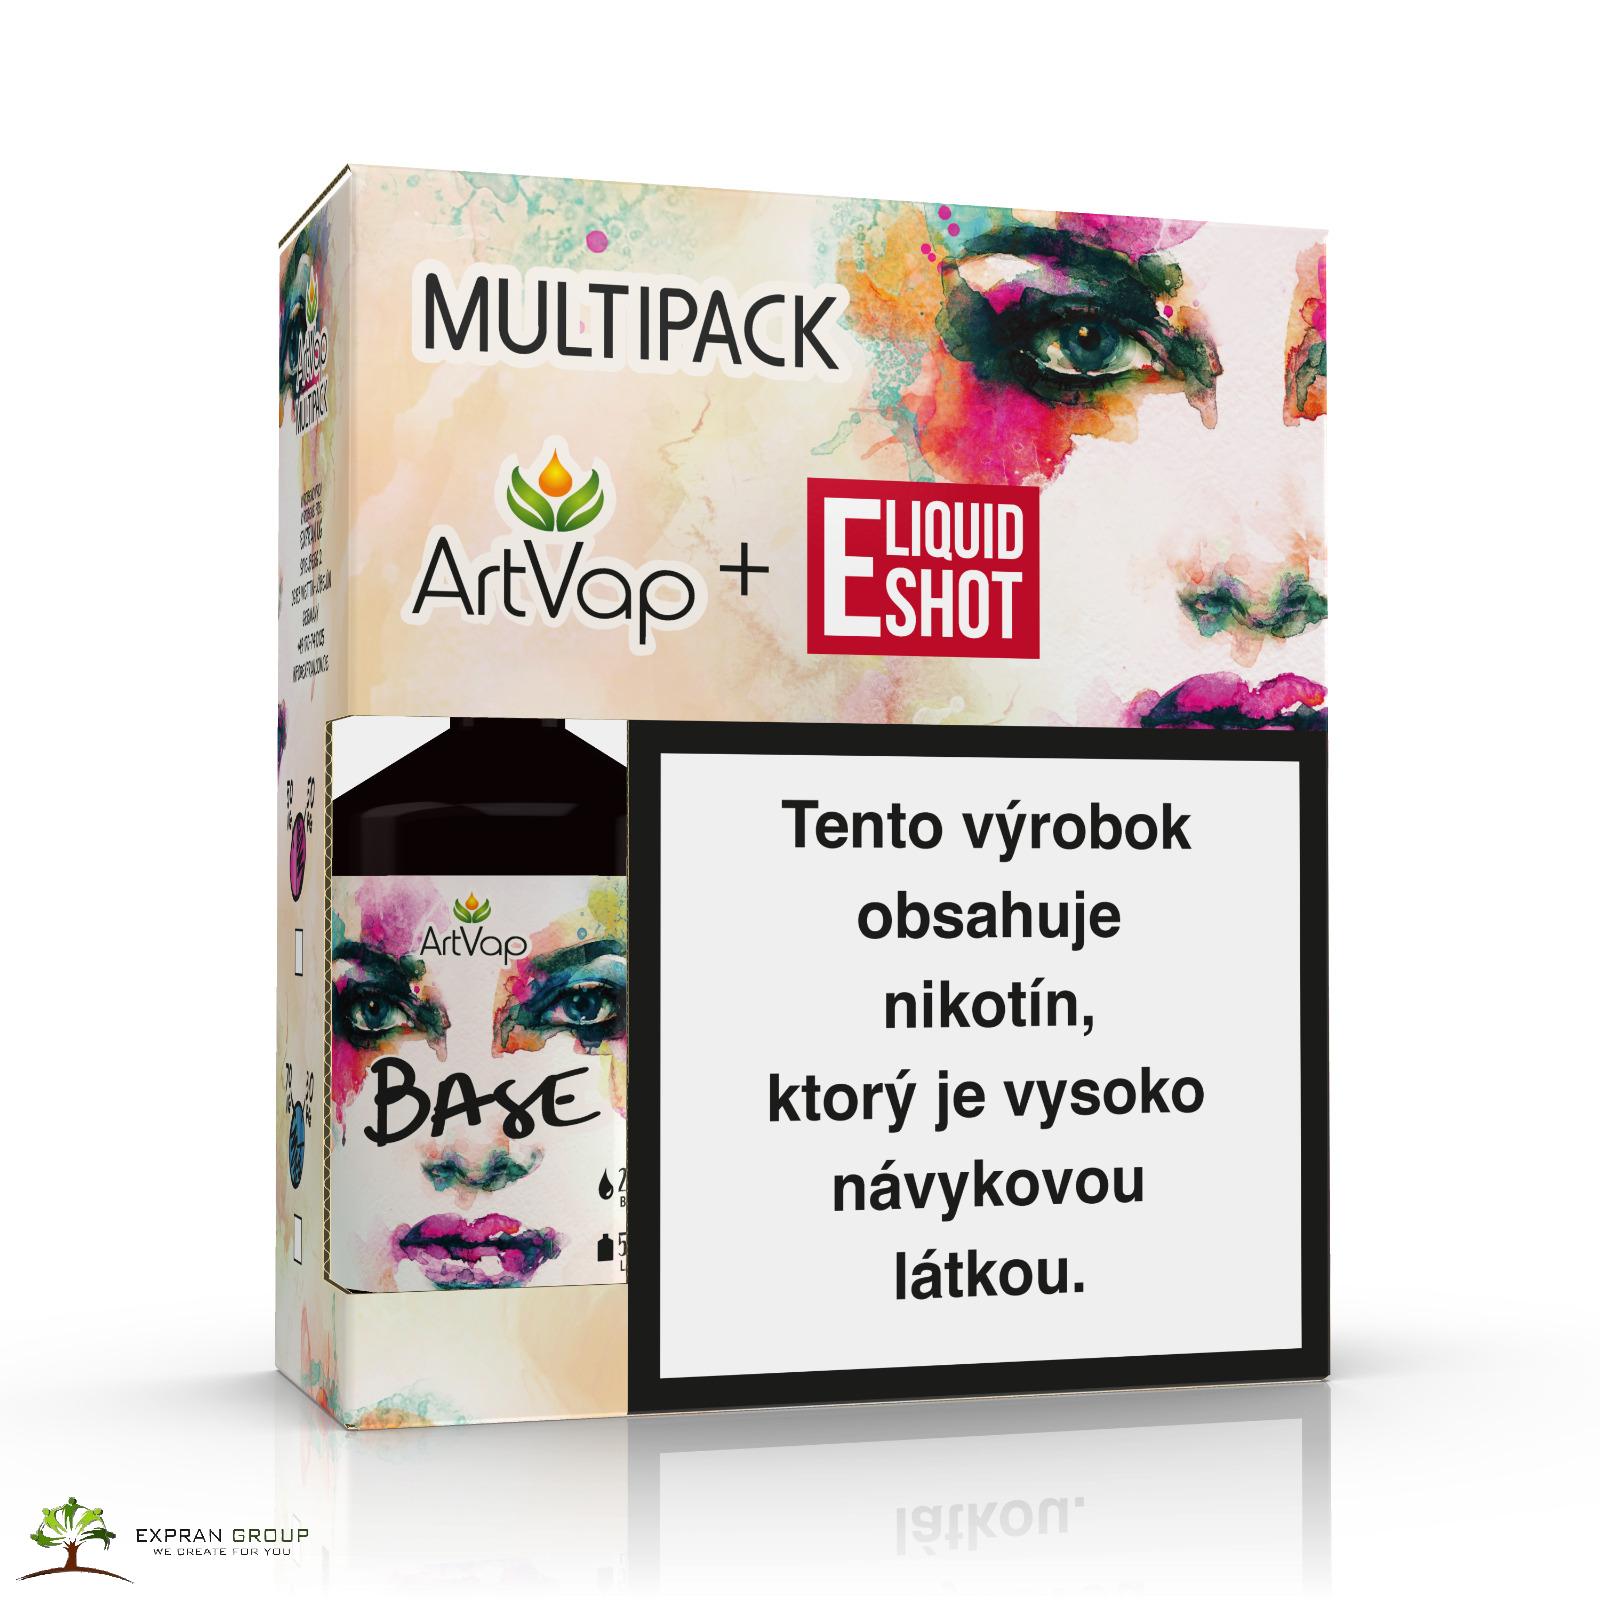 Multipack 500 ml 30PG/70VG 4 mg/ml